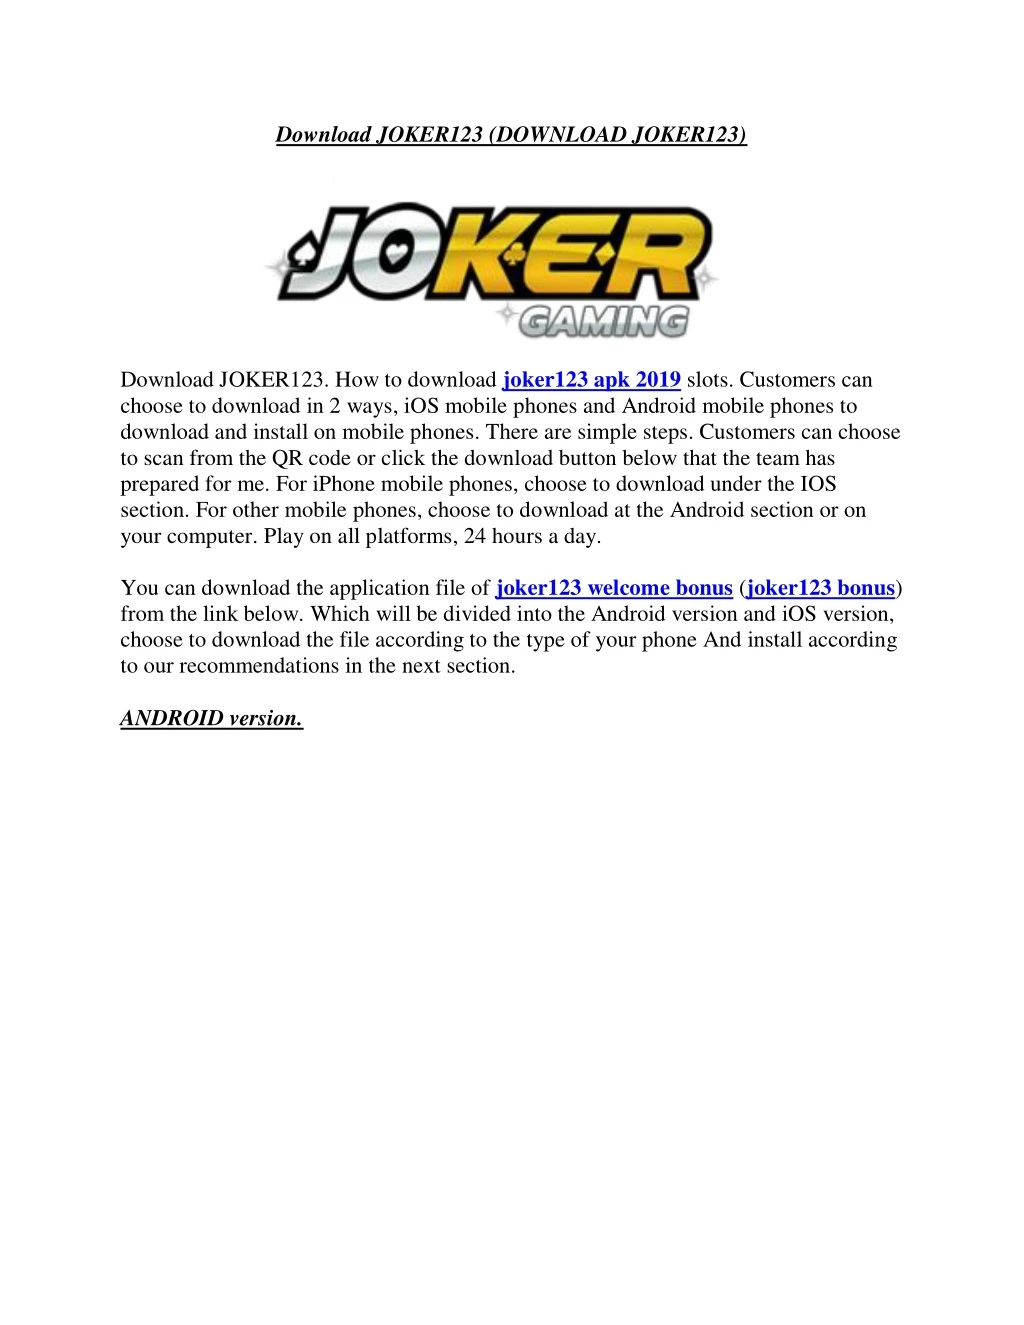 download joker123 download joker123